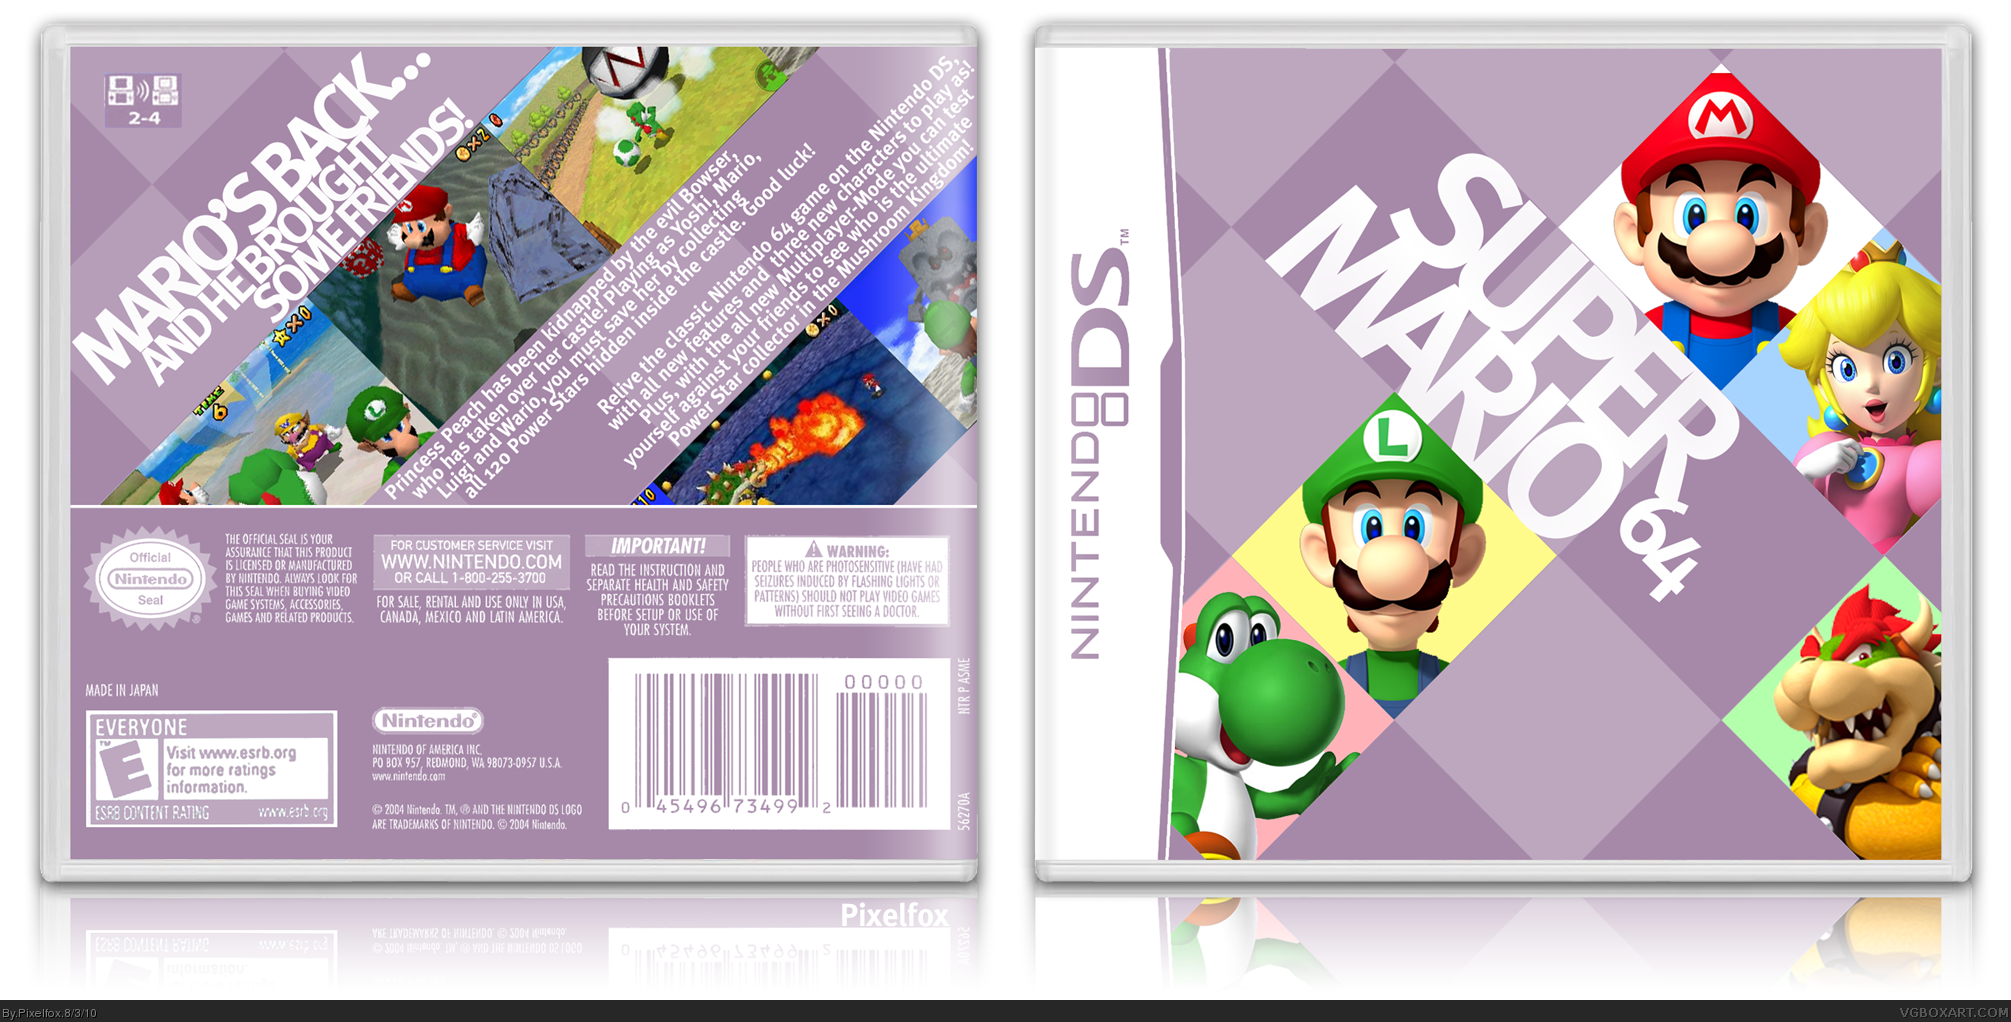 Super Mario 64 DS box cover